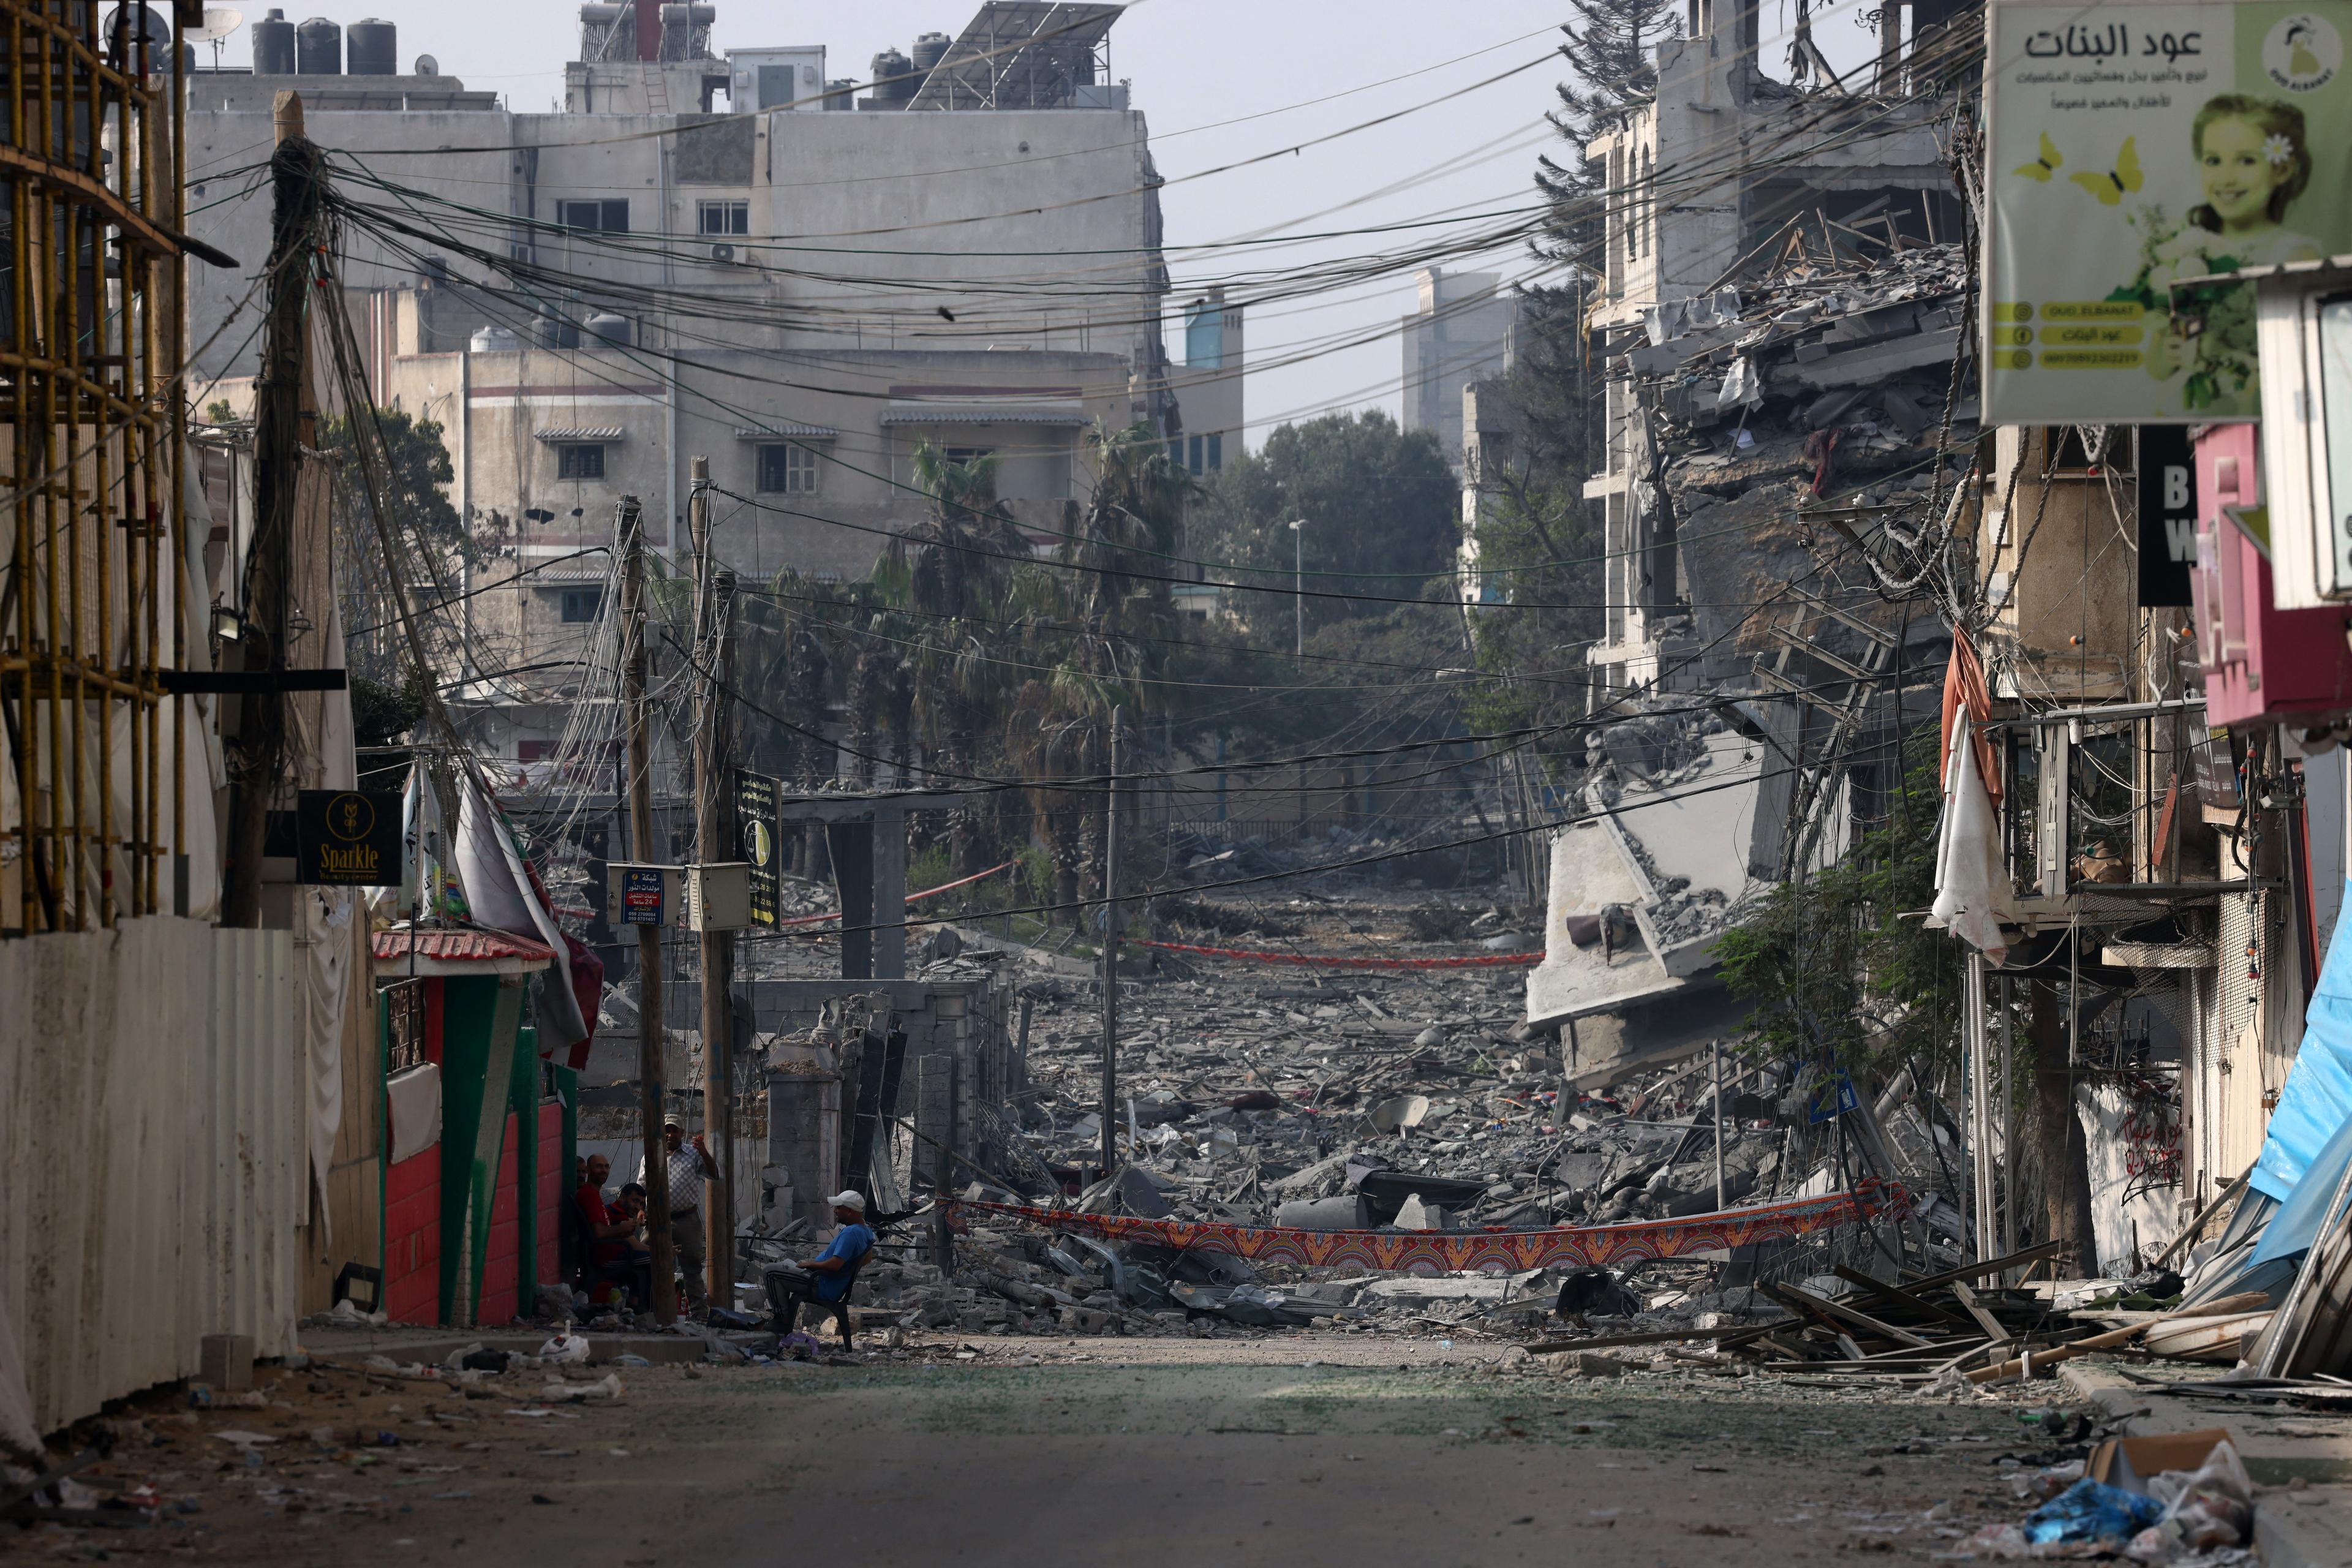 ulica ze zburzonymi budynkami, mężczyzna siedzi na krześle i patrzy na ruiny